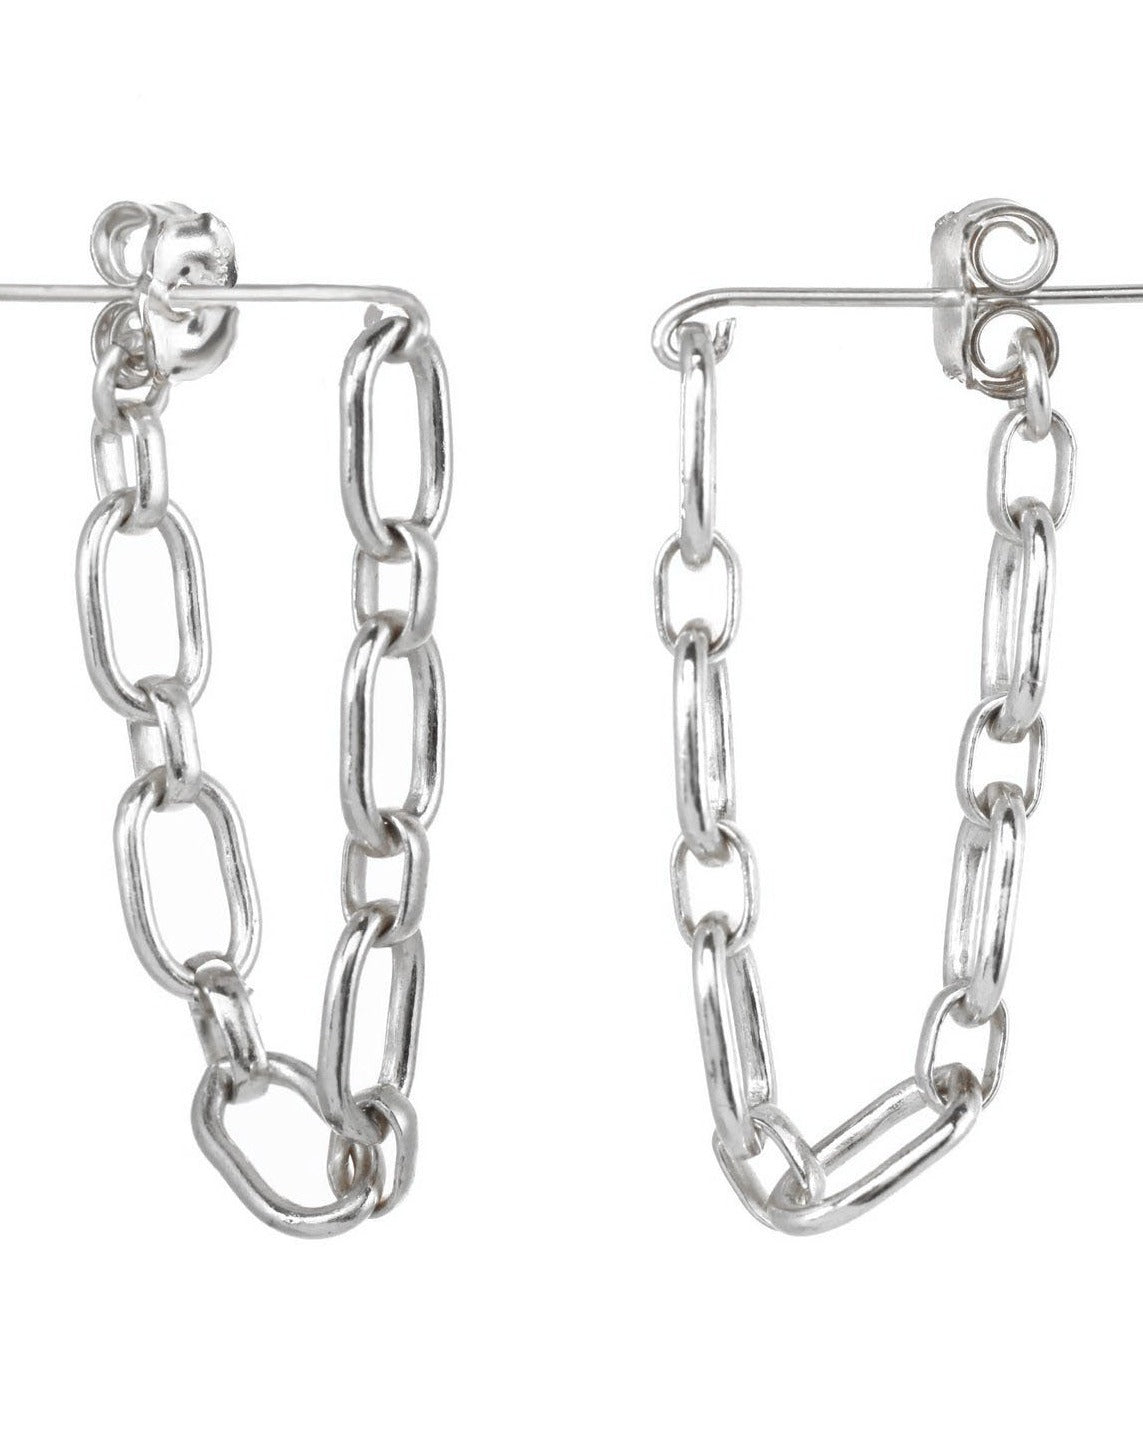 Sita Earrings by KOZAKH. Chain dangling earrings in Sterling Silver.